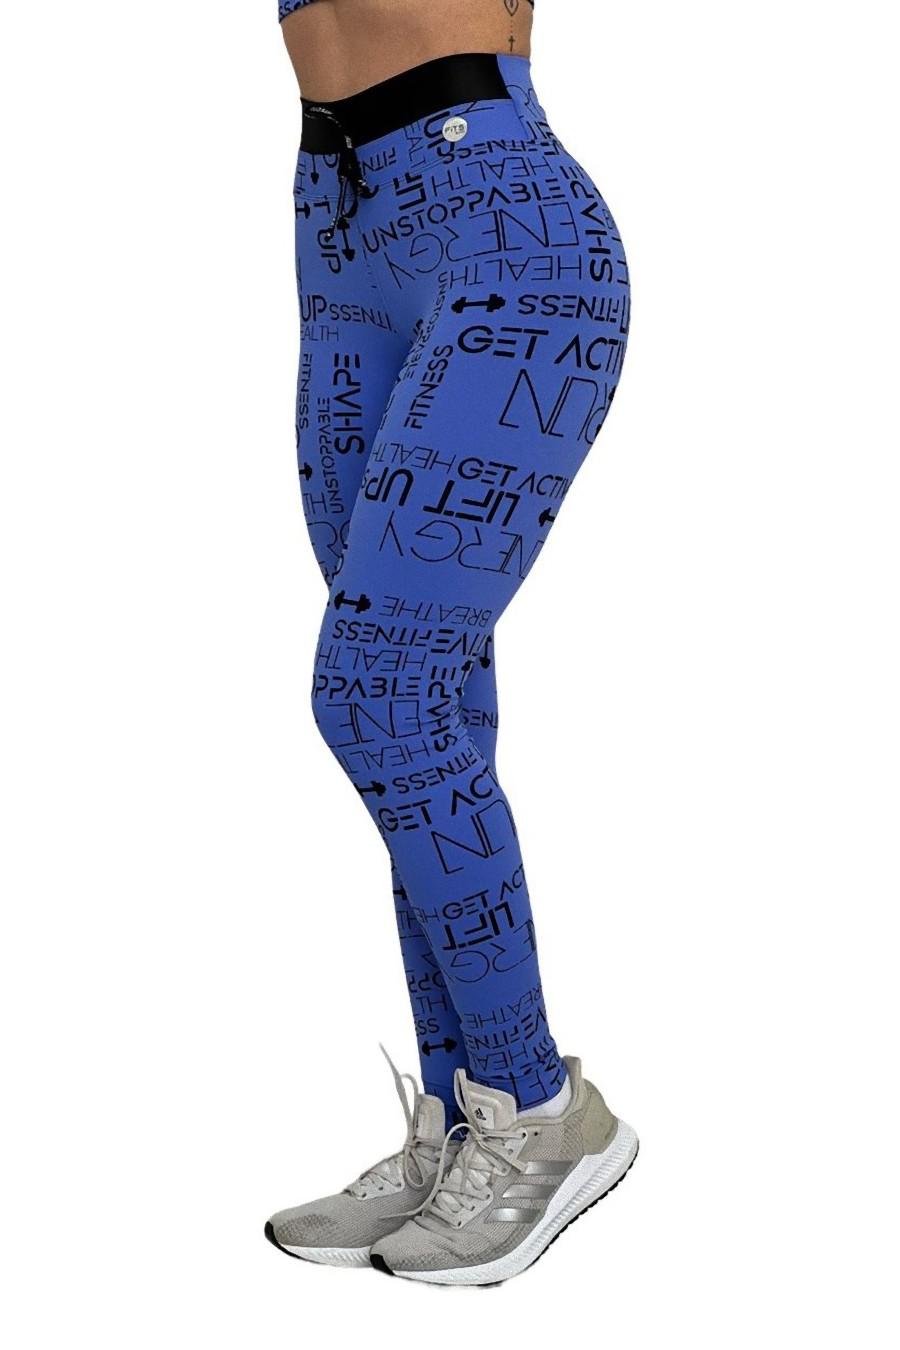 Bizz Store - Calça Legging Feminina Nike Power Essential Tights